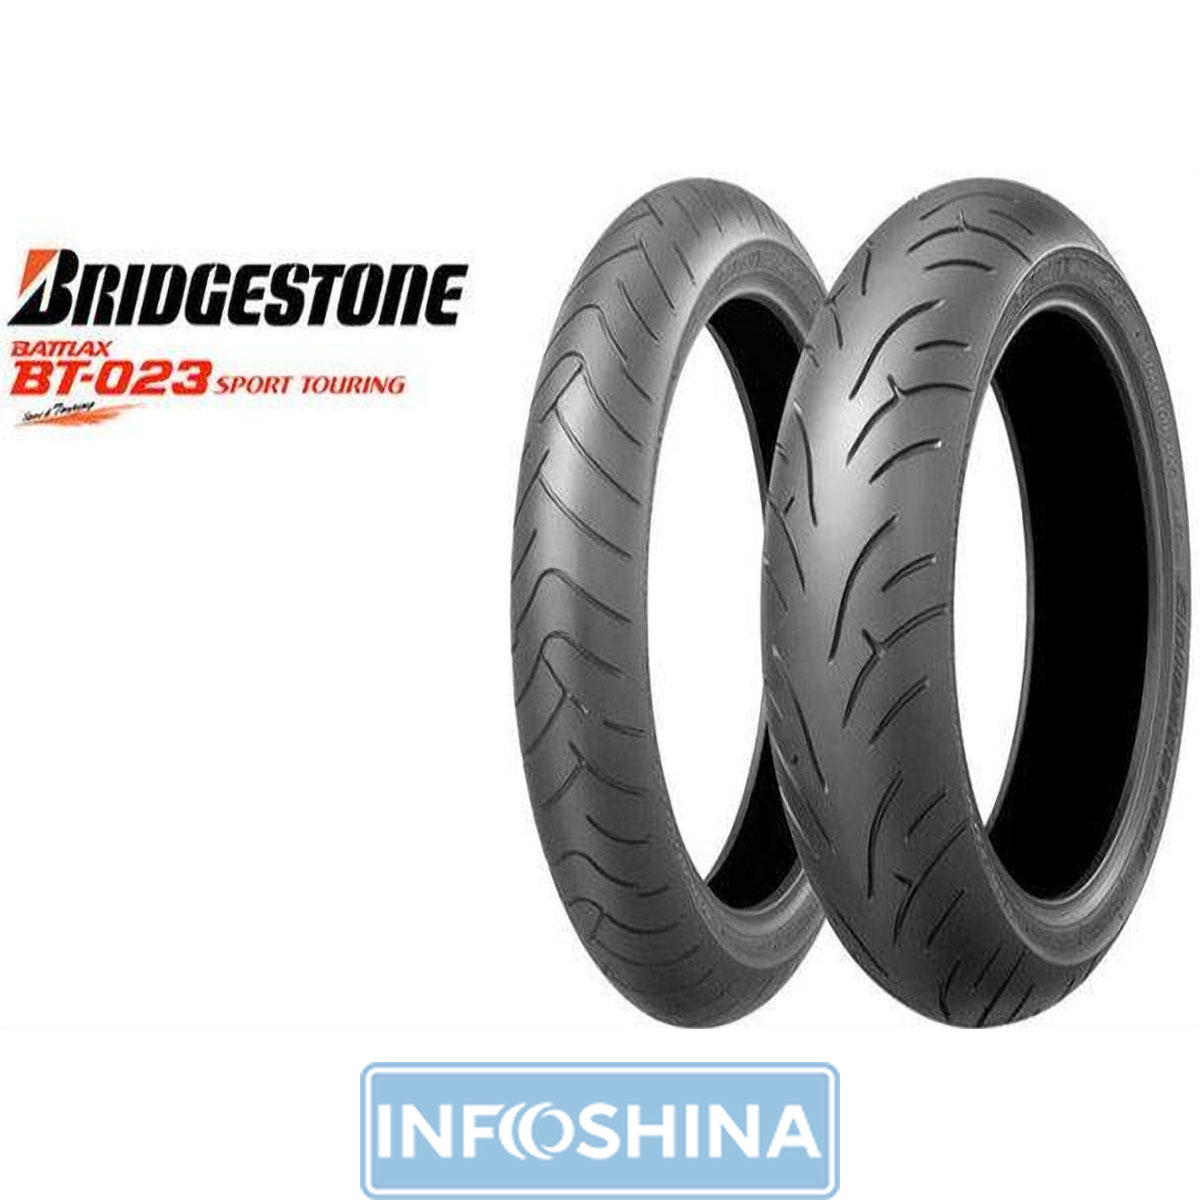 Купить шины Bridgestone S20 110/70 R17 54W